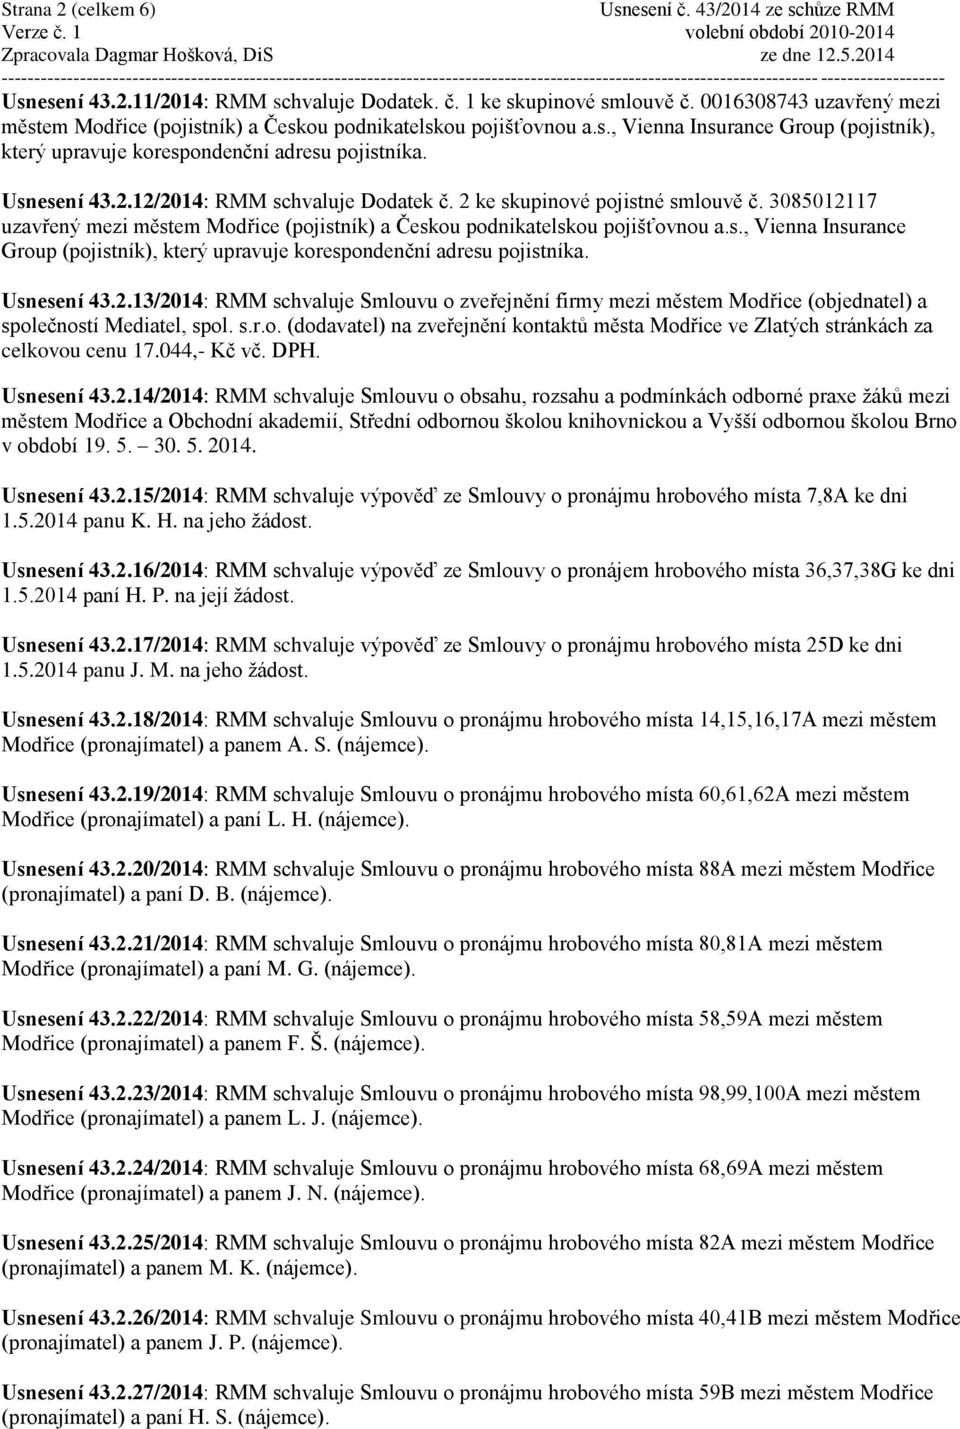 Usnesení 43.2.13/2014: RMM schvaluje Smlouvu o zveřejnění firmy mezi městem Modřice (objednatel) a společností Mediatel, spol. s.r.o. (dodavatel) na zveřejnění kontaktů města Modřice ve Zlatých stránkách za celkovou cenu 17.